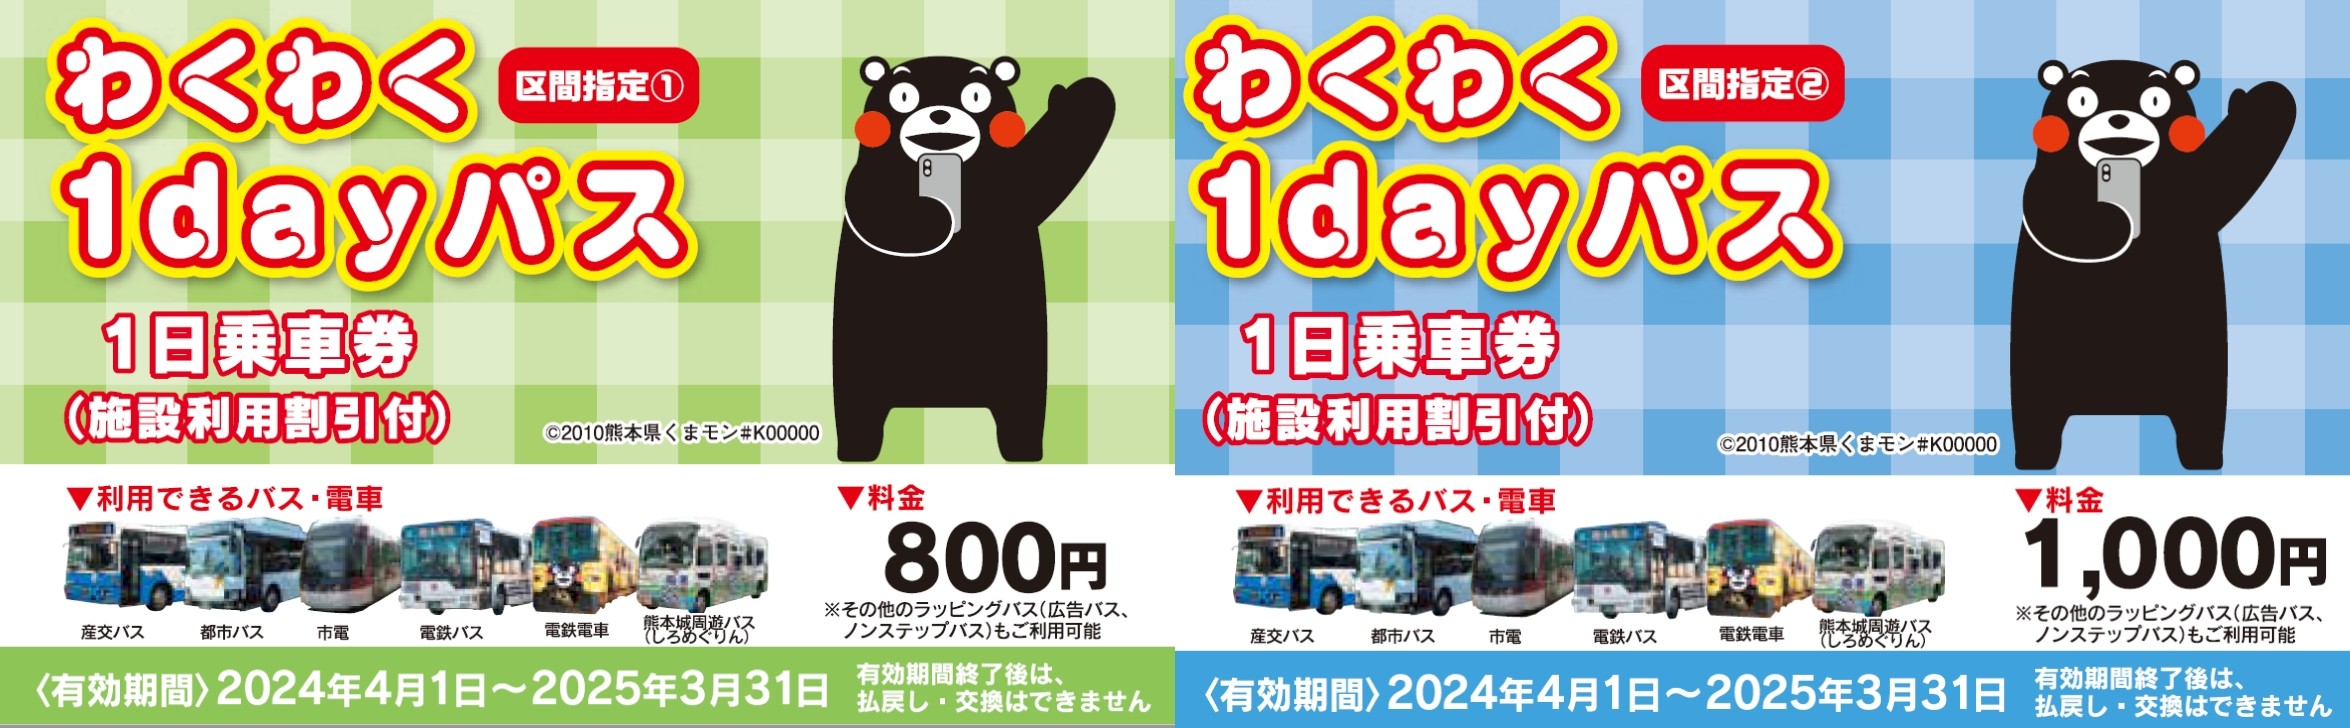 Vé đi lại trong ngày bằng tram và bus (Waku Waku 1day Pass)